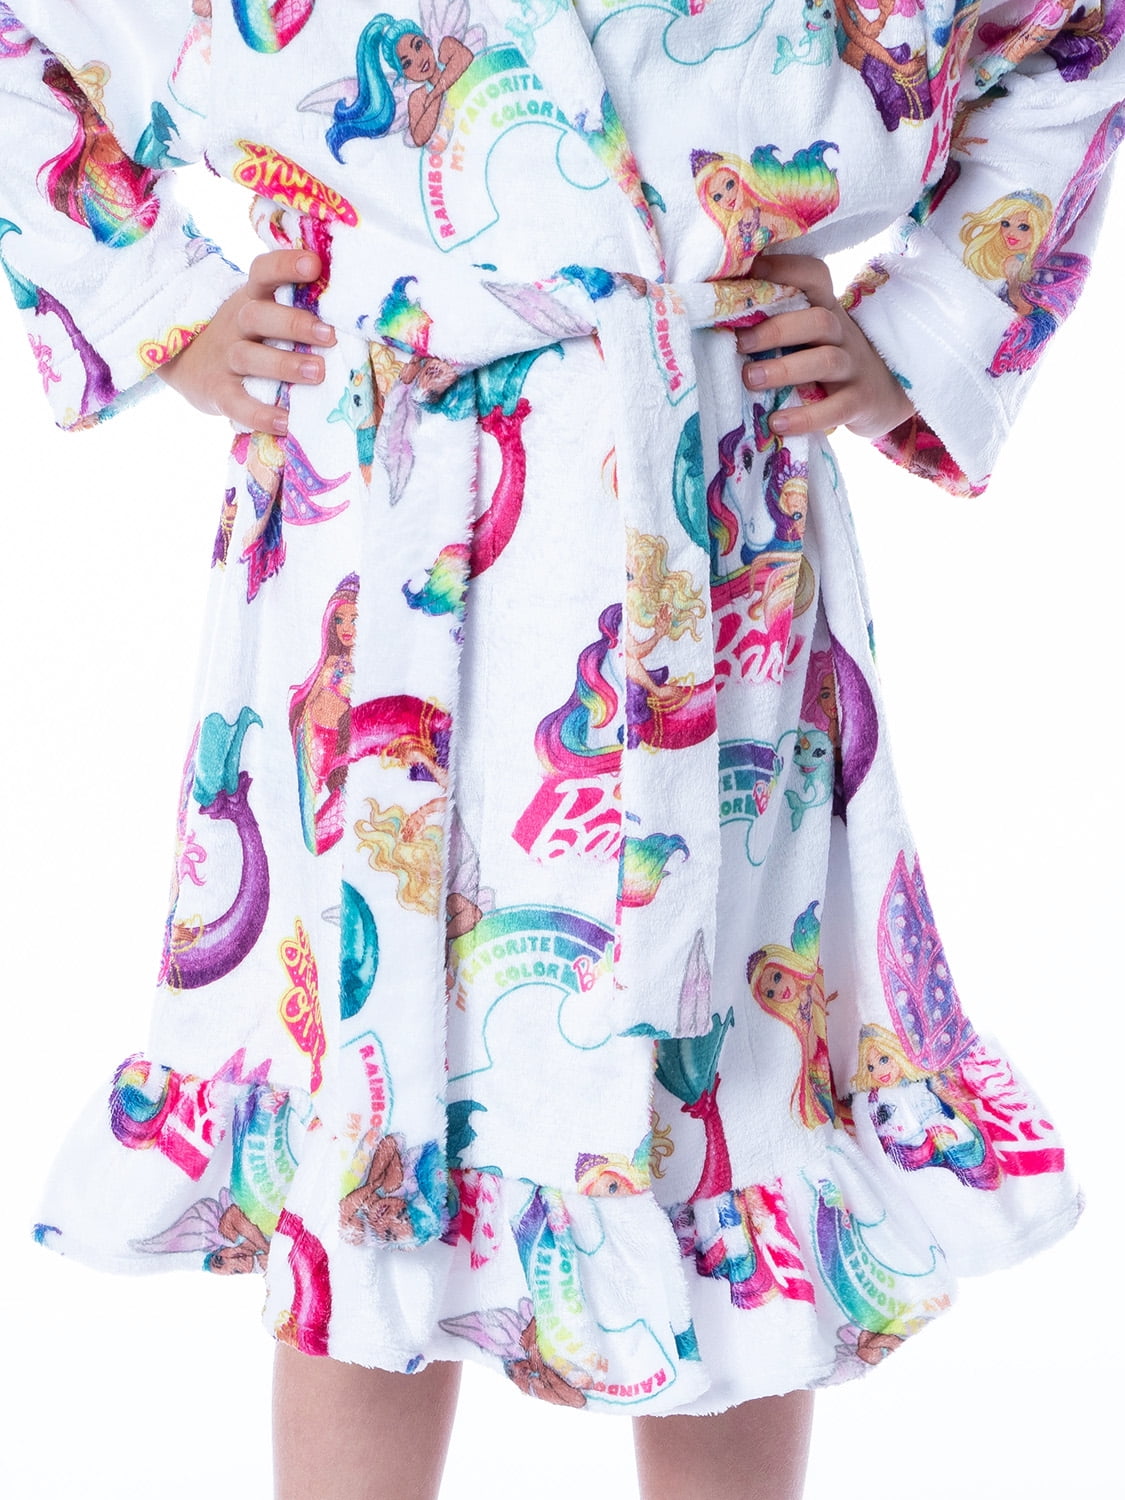  Robes For Girls, Cozy Cute Fleece Flannel Sleepwear Hooded  Print Bathrobe, Pony Purple, 5 Years 5T